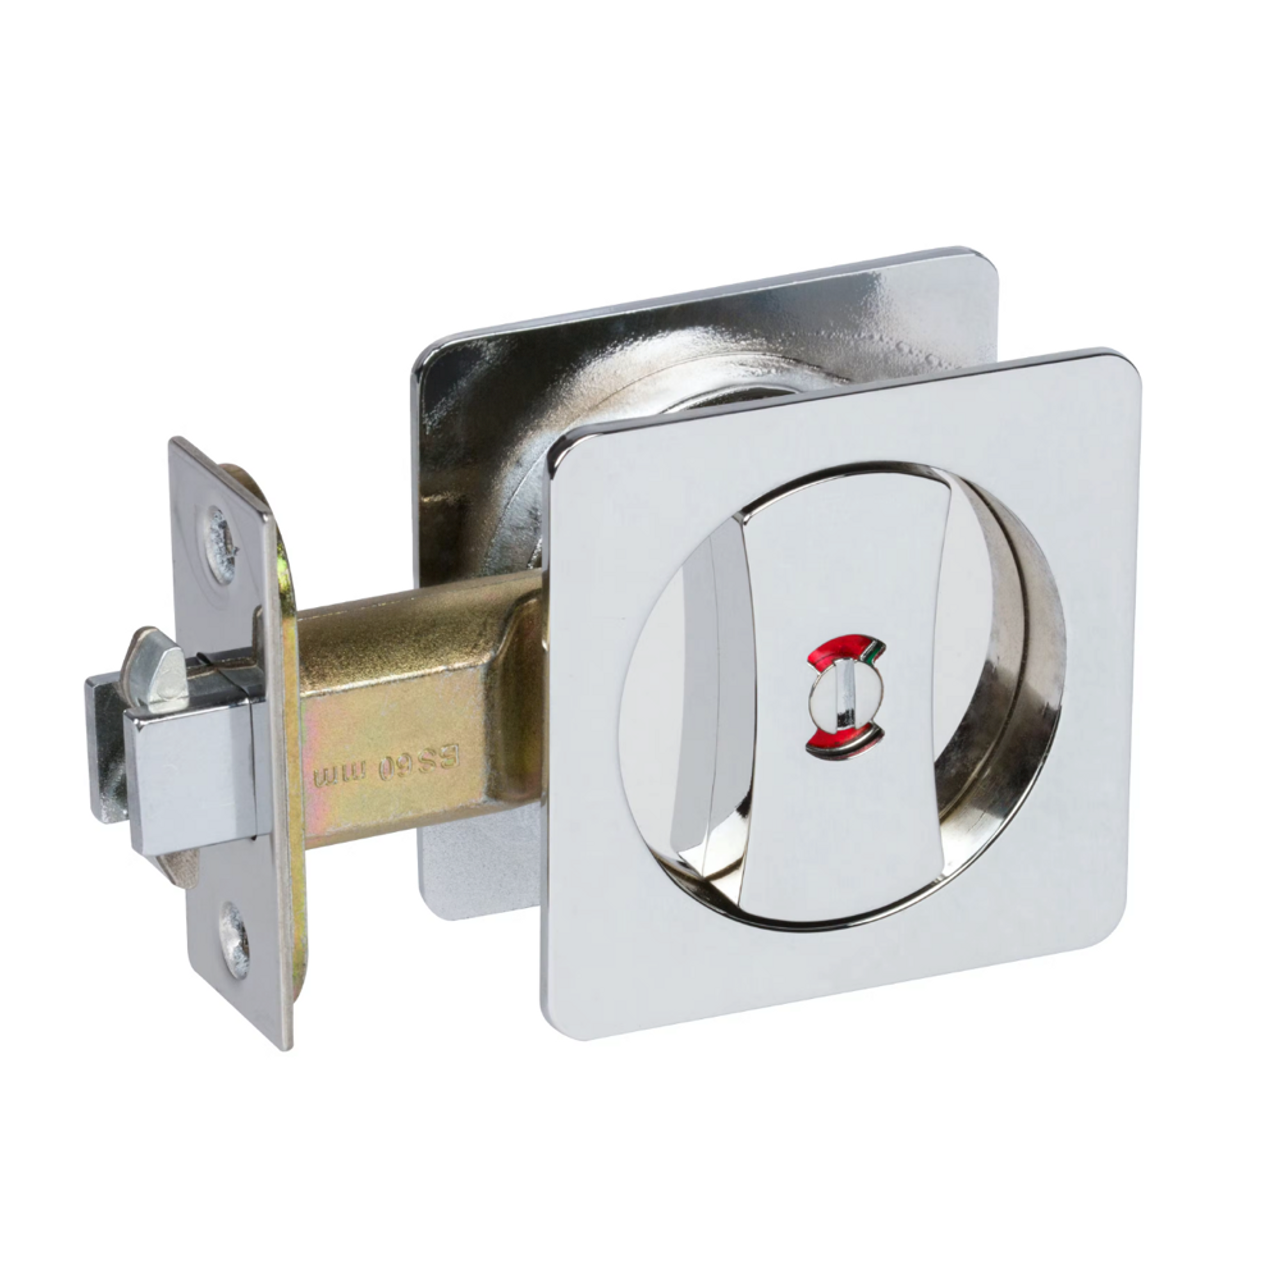 Contemporary Square Privacy Pocket Door Lock